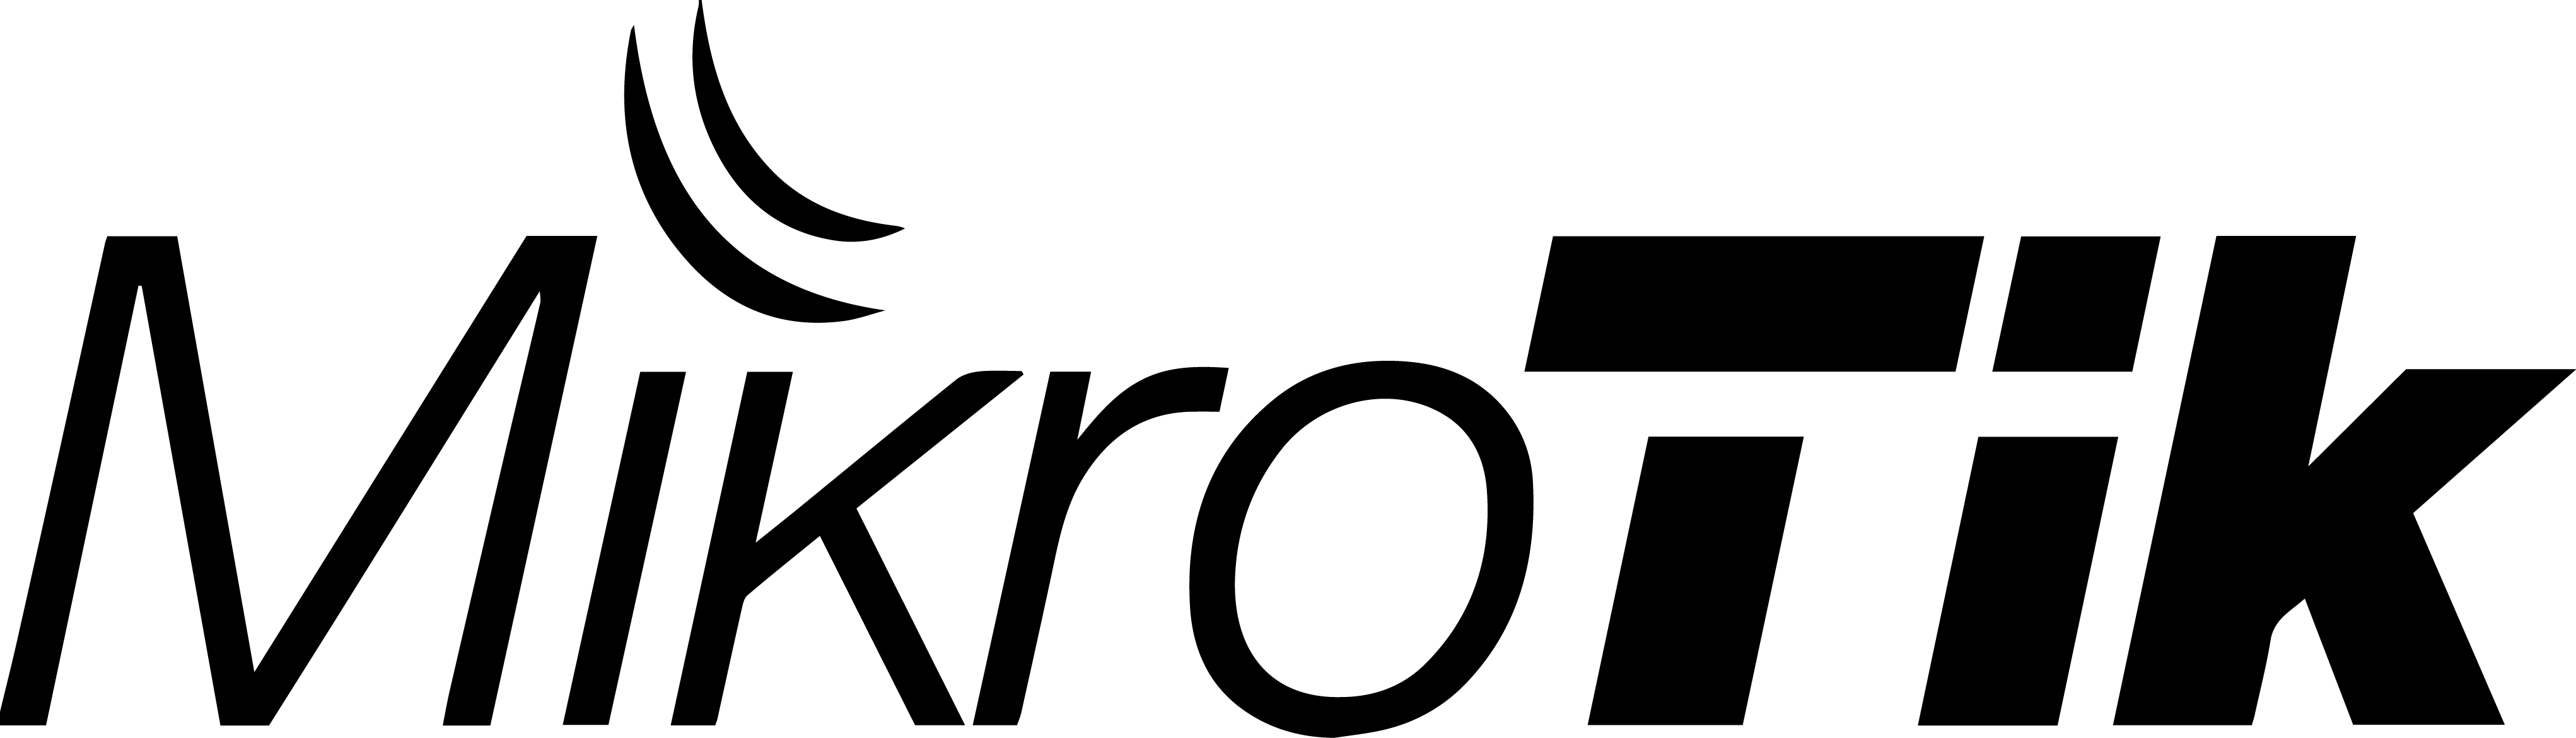 logo-mikrotik-black